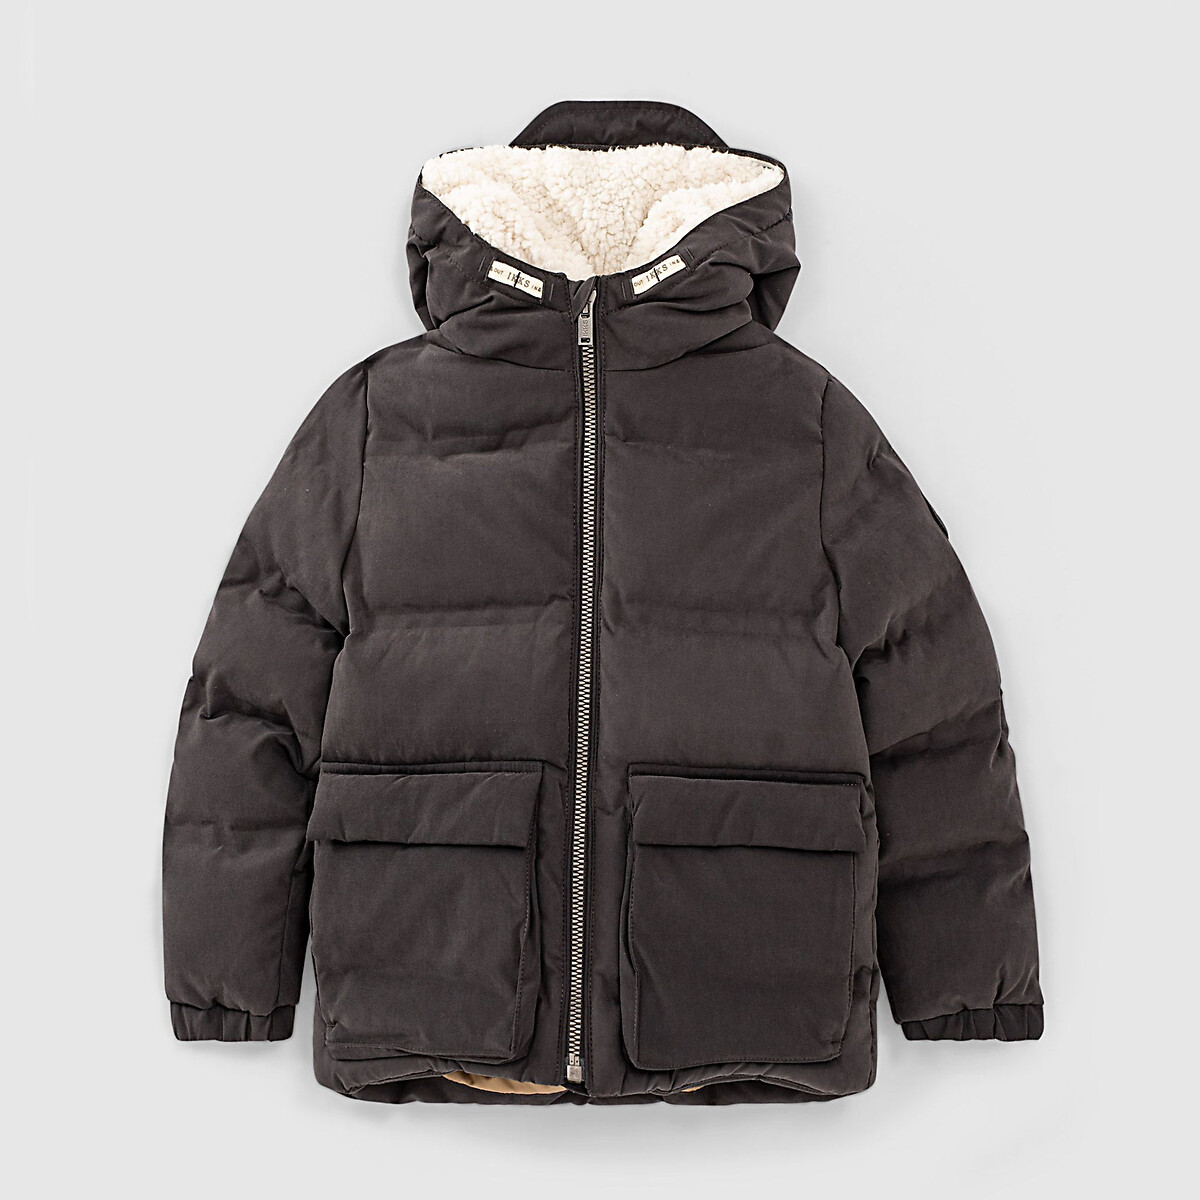 Куртка IKKS JUNIOR Стеганая утепленная с капюшоном 4-14 лет 12 лет -150 см серый, размер 12 лет -150 см